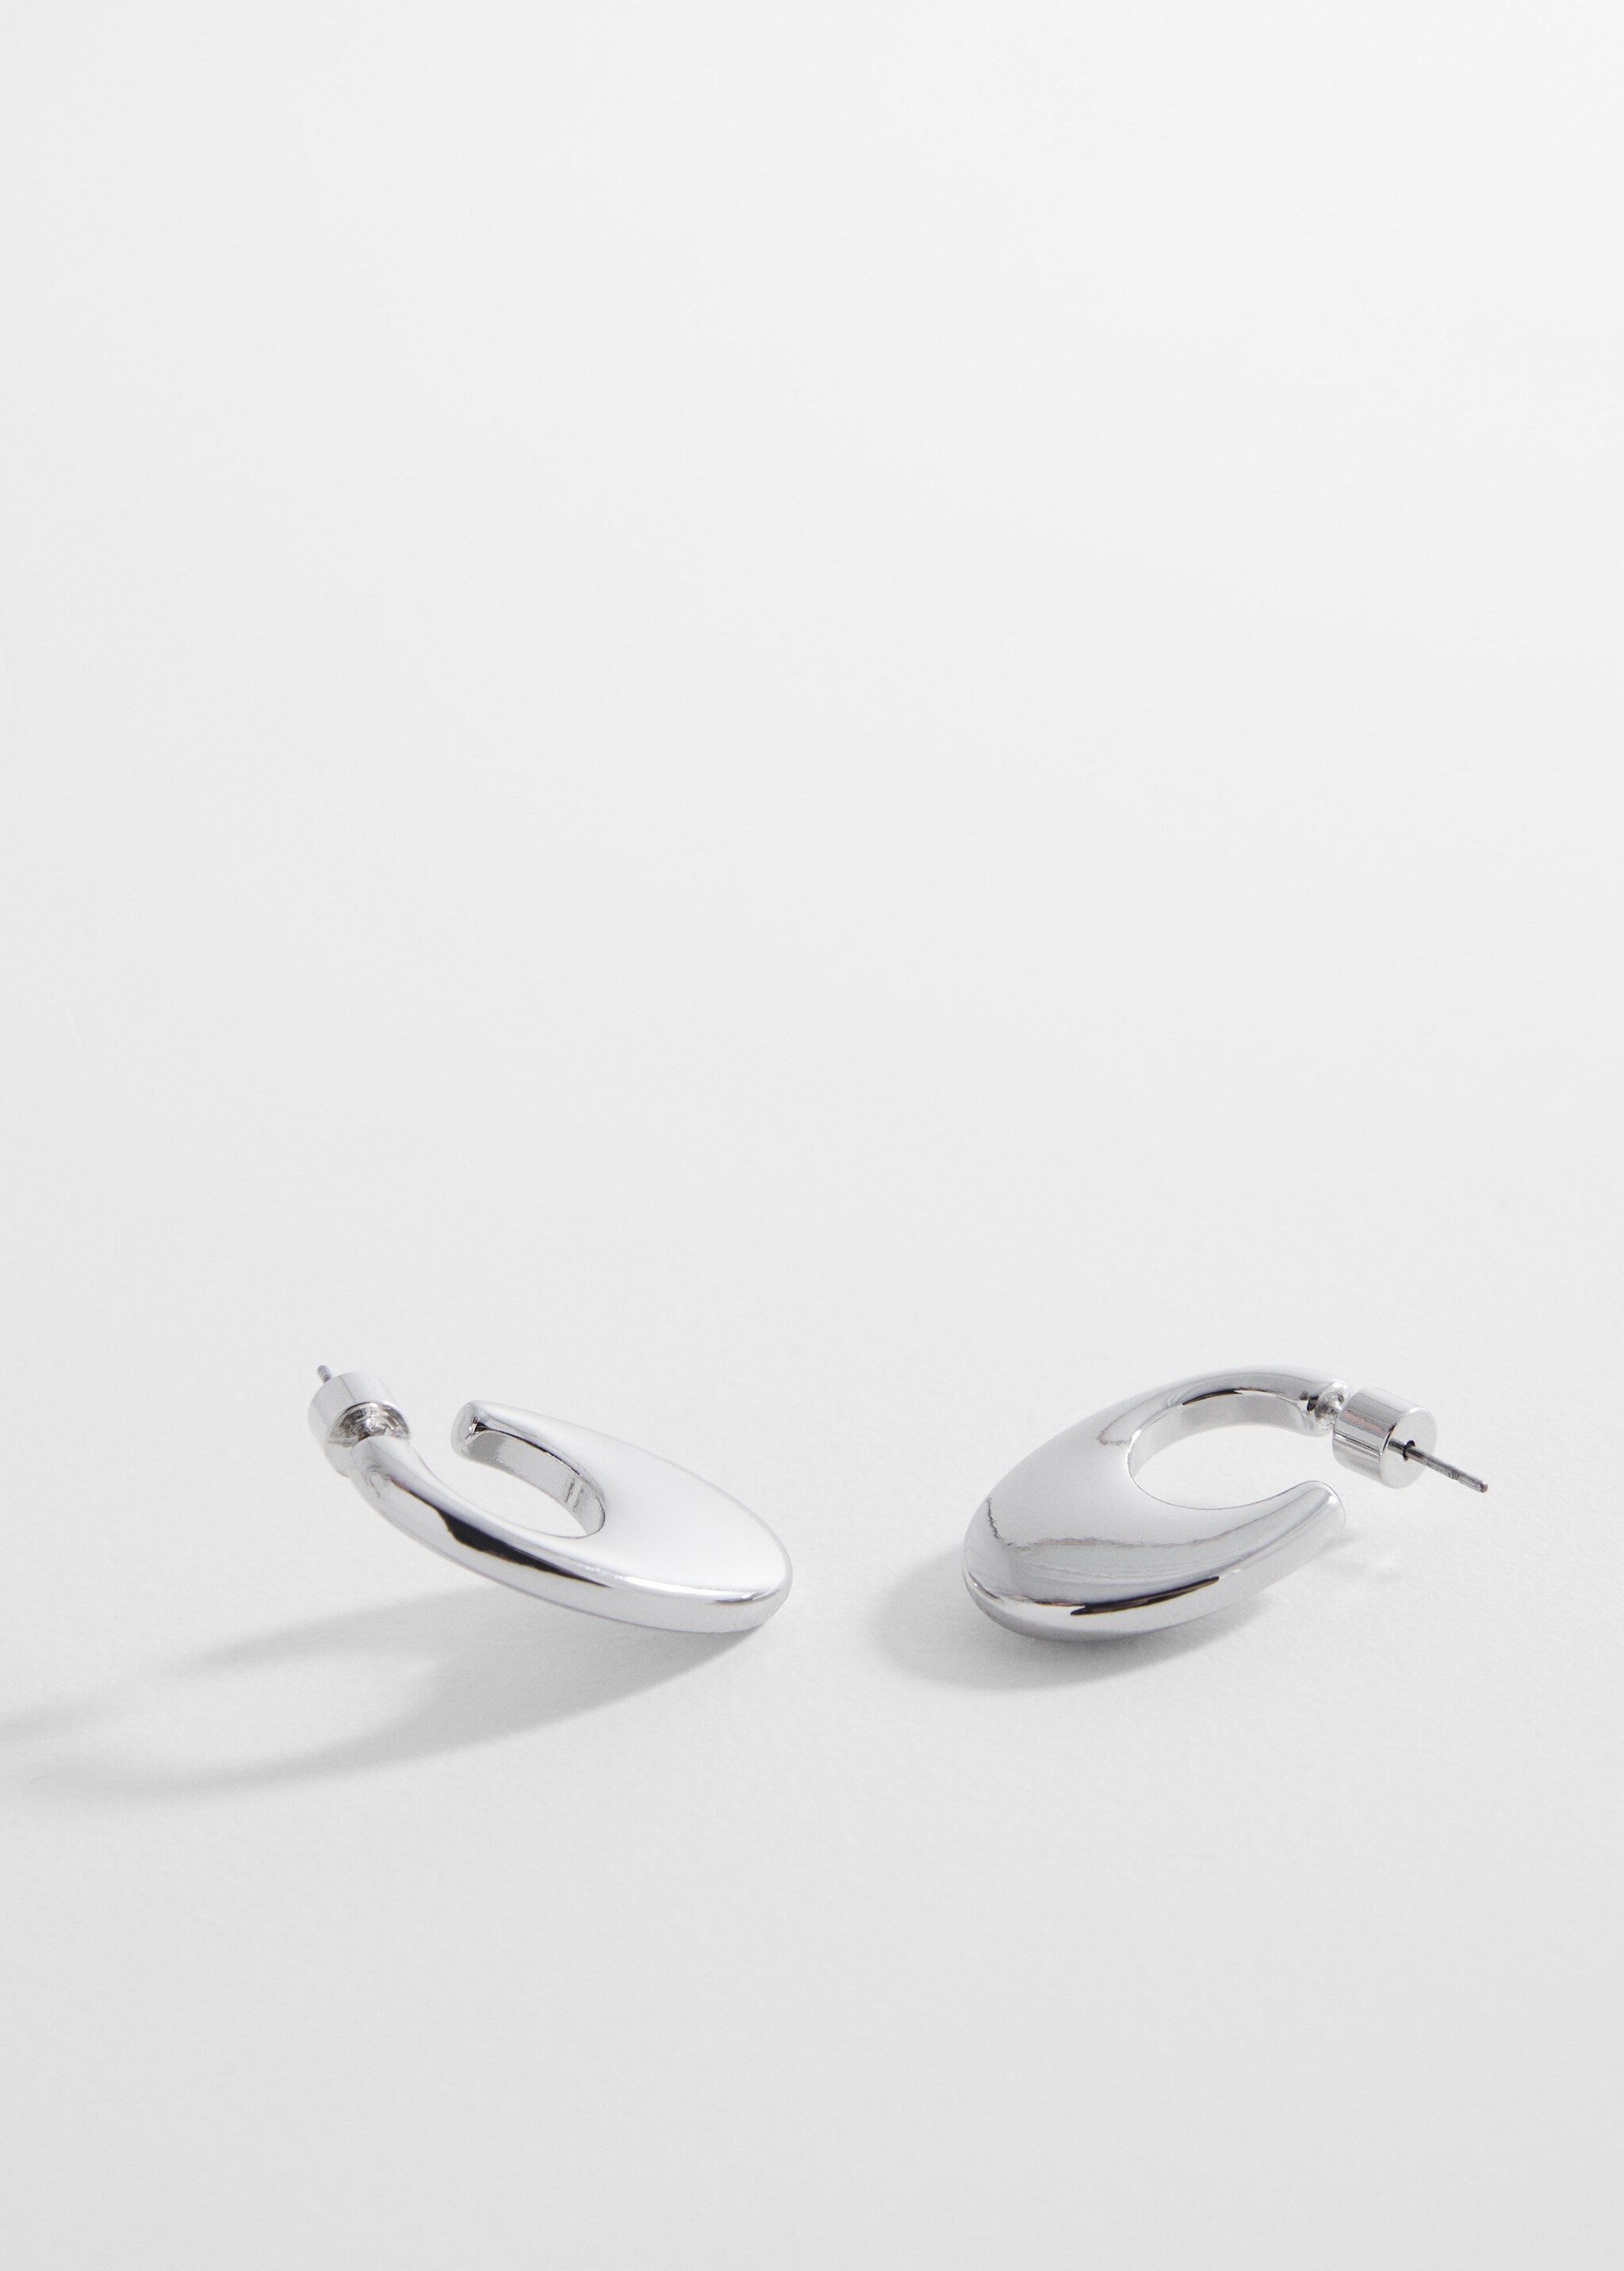 Oval hoop earrings - Medium plane